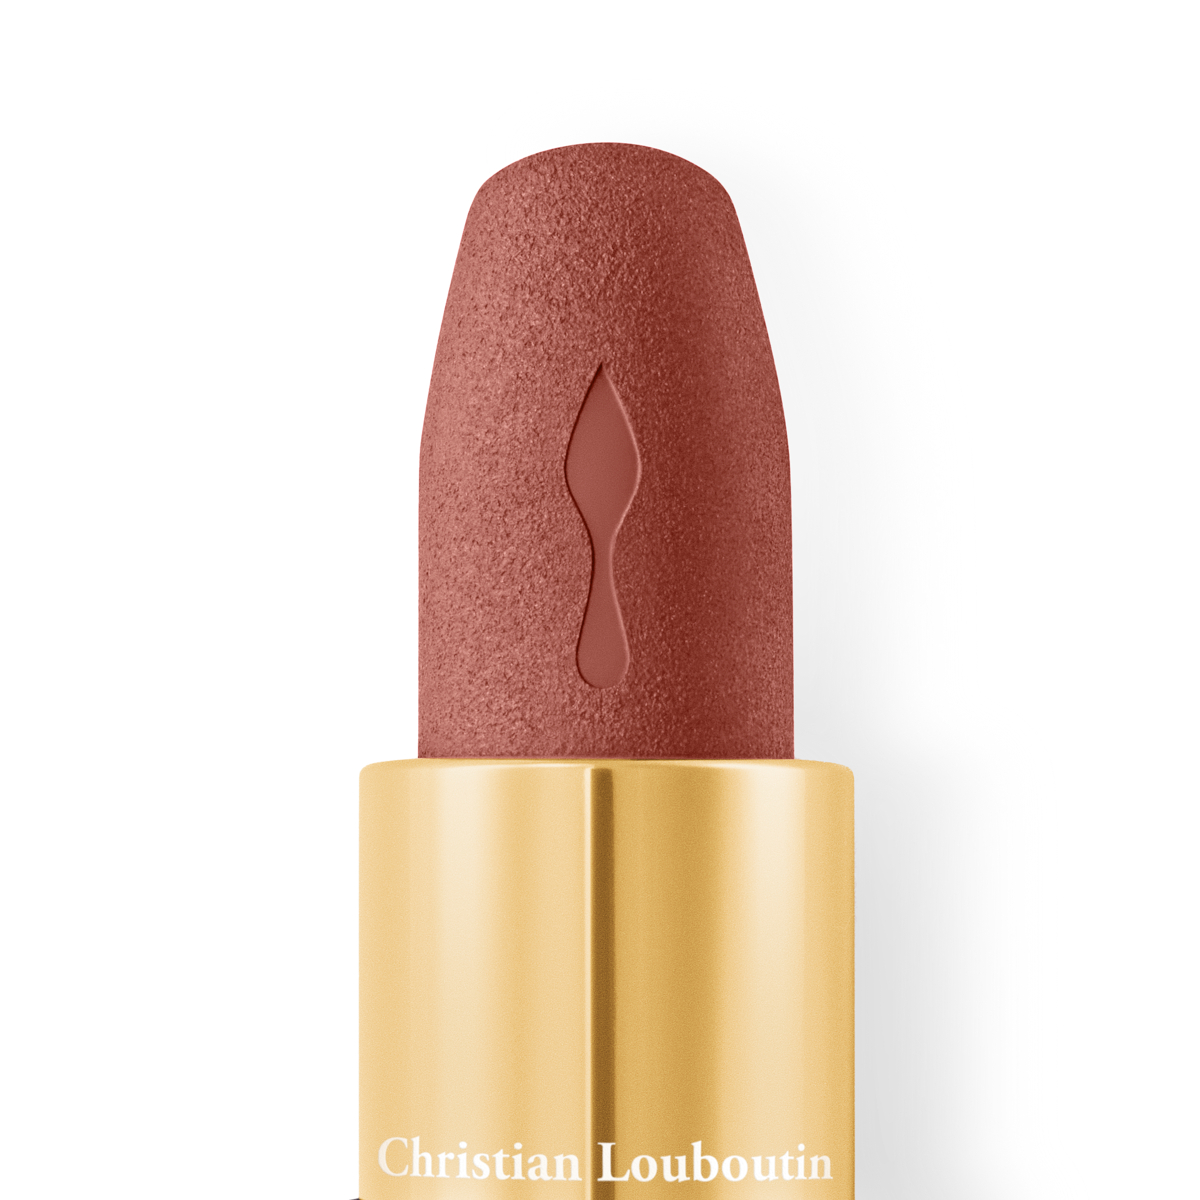 Christian Louboutin Beauty Store, 2015-05-16